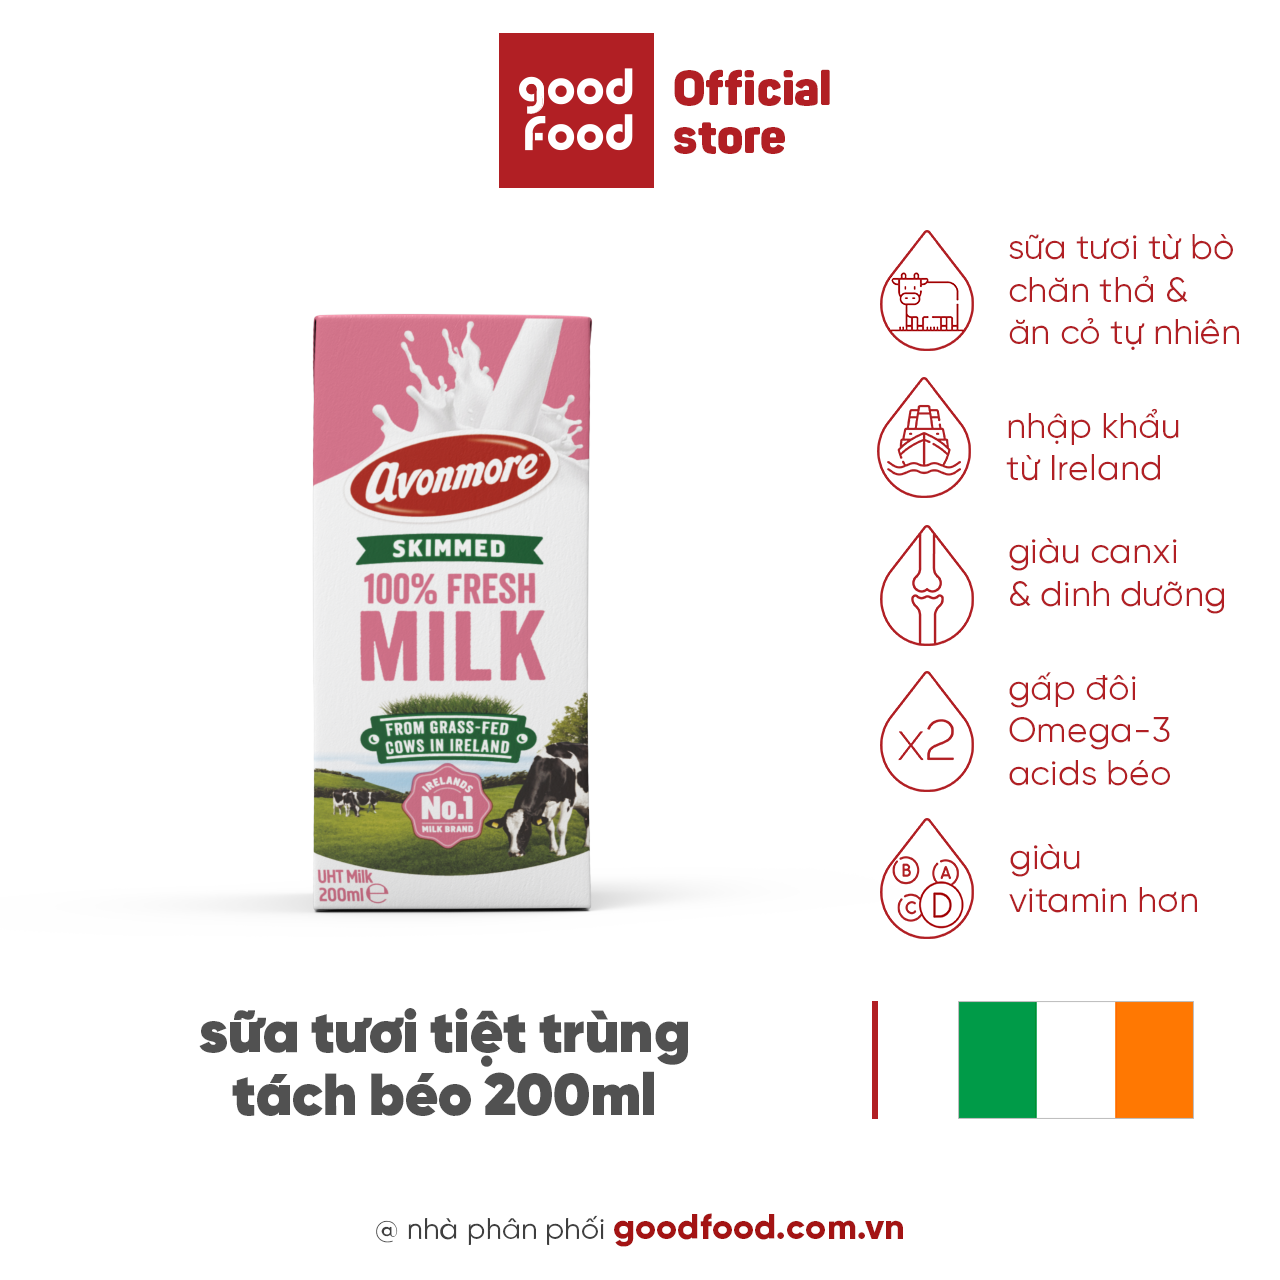 sữa tươi tách béo tiệt trùng (không đường) avonmore uht skimmed milk 200ml giảm cân giữ dáng hiệu quả tốt cho sức khỏe 1